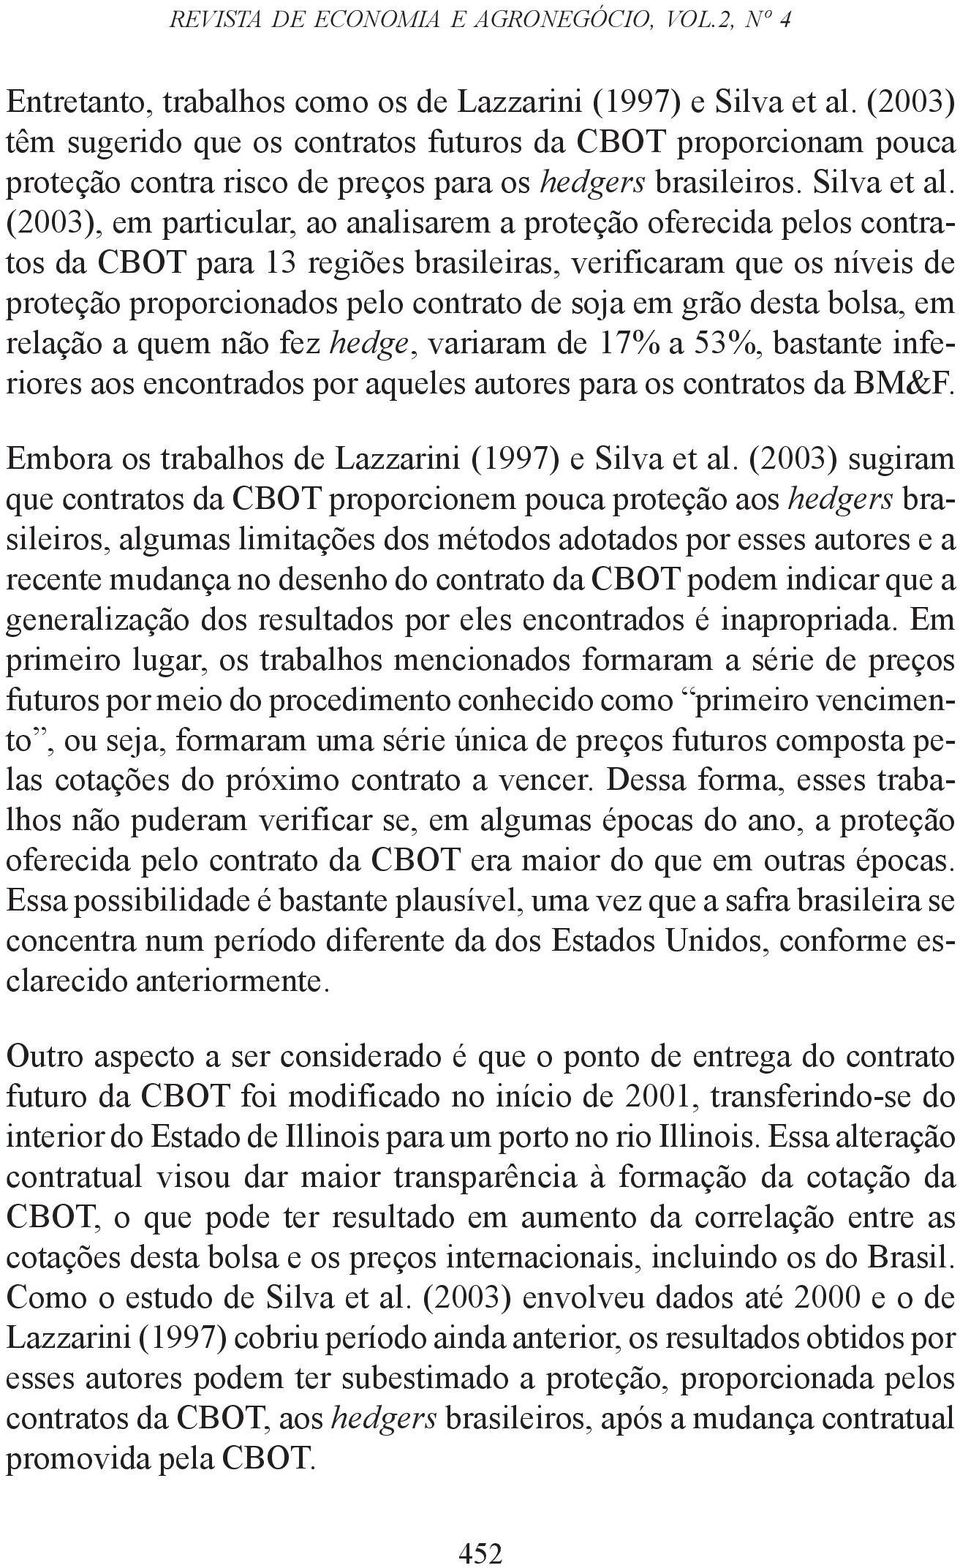 (003), em particular, ao analisarem a proteção oferecida pelos contratos da CBOT para 13 regiões brasileiras, verificaram que os níveis de proteção proporcionados pelo contrato de soja em grão desta